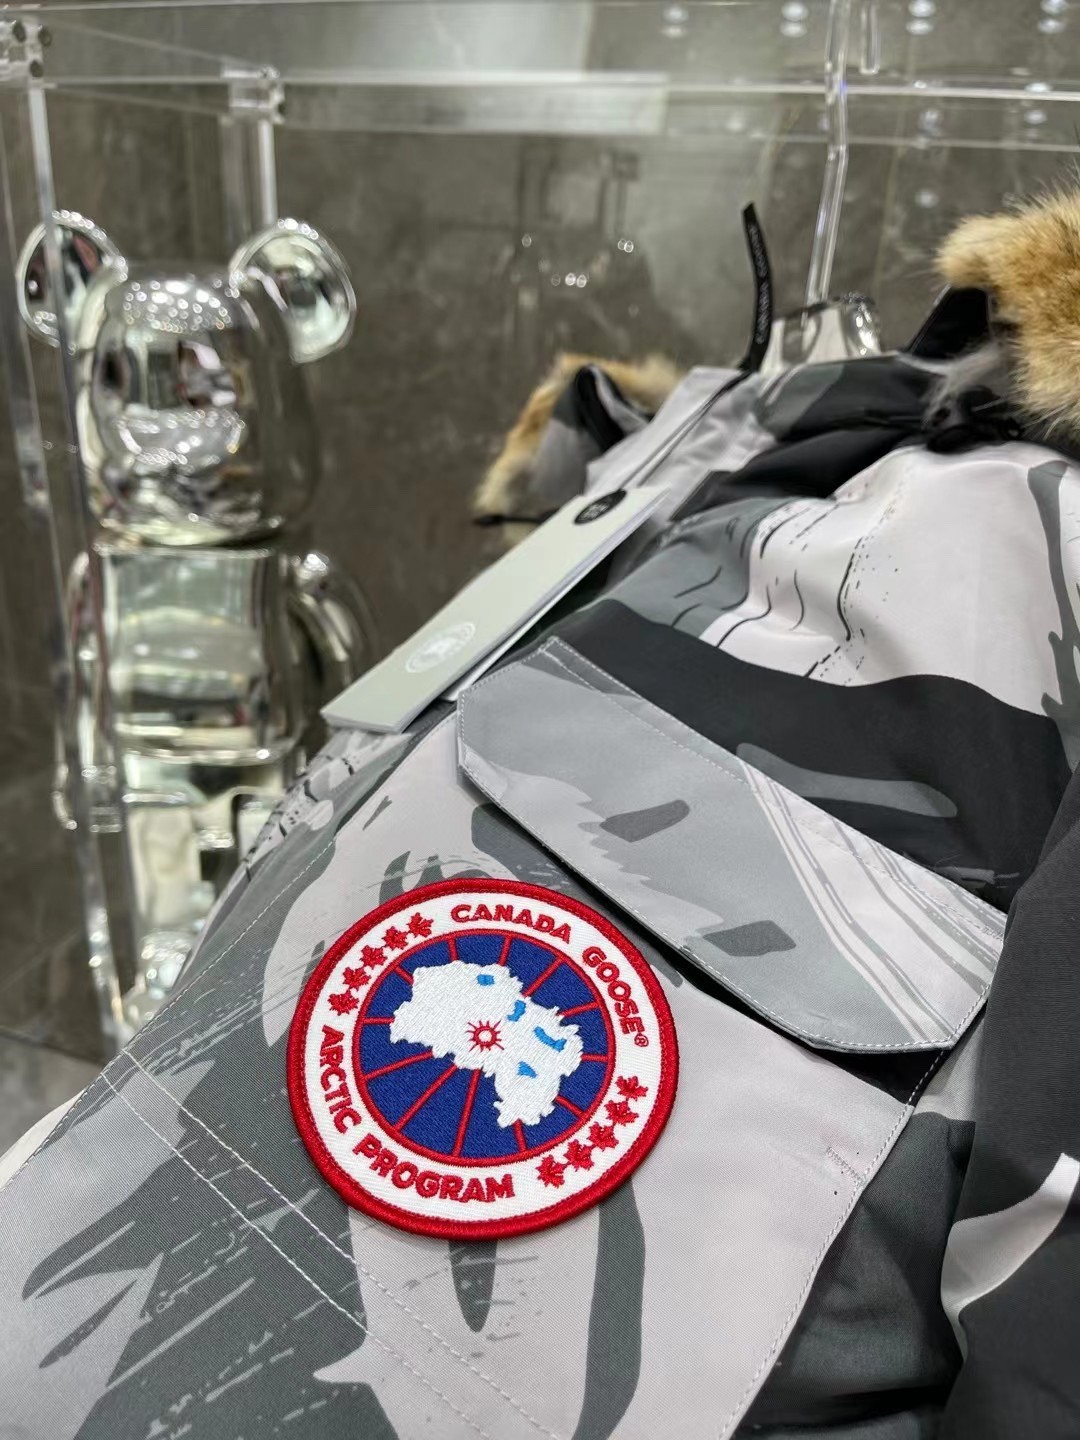 2021秋冬新作 カナダグース 男性用ダウンジャケット コピー 字母襟を贈呈します オオカミの毛 迷彩 白いアヒル羽毛